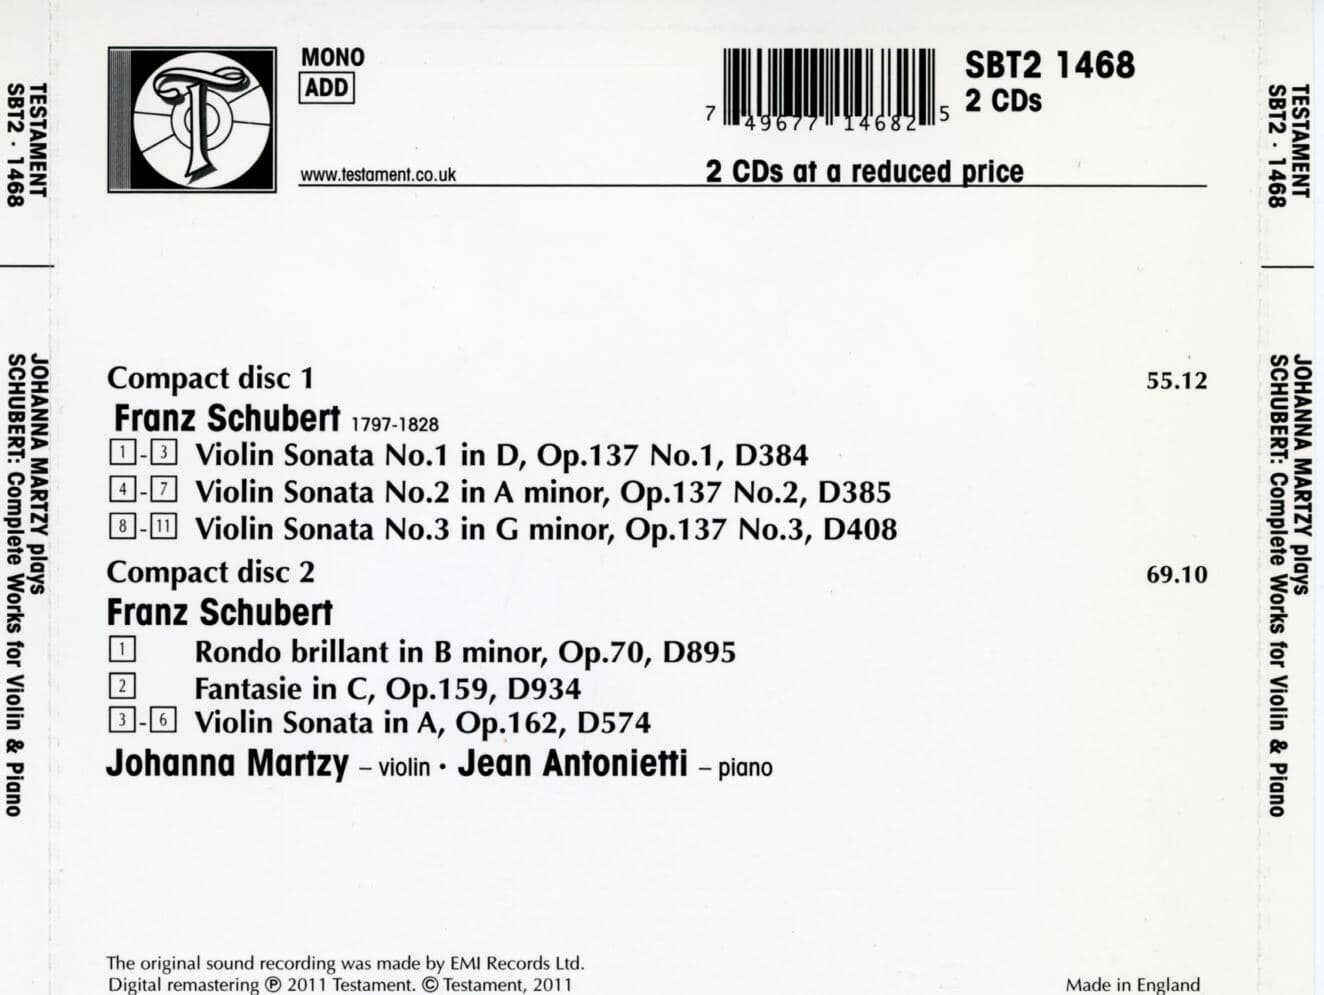 요한나 마르치 - Johanna Martzy - Schubert Complete Works For Violin & Piano 2Cds [U.K발매]